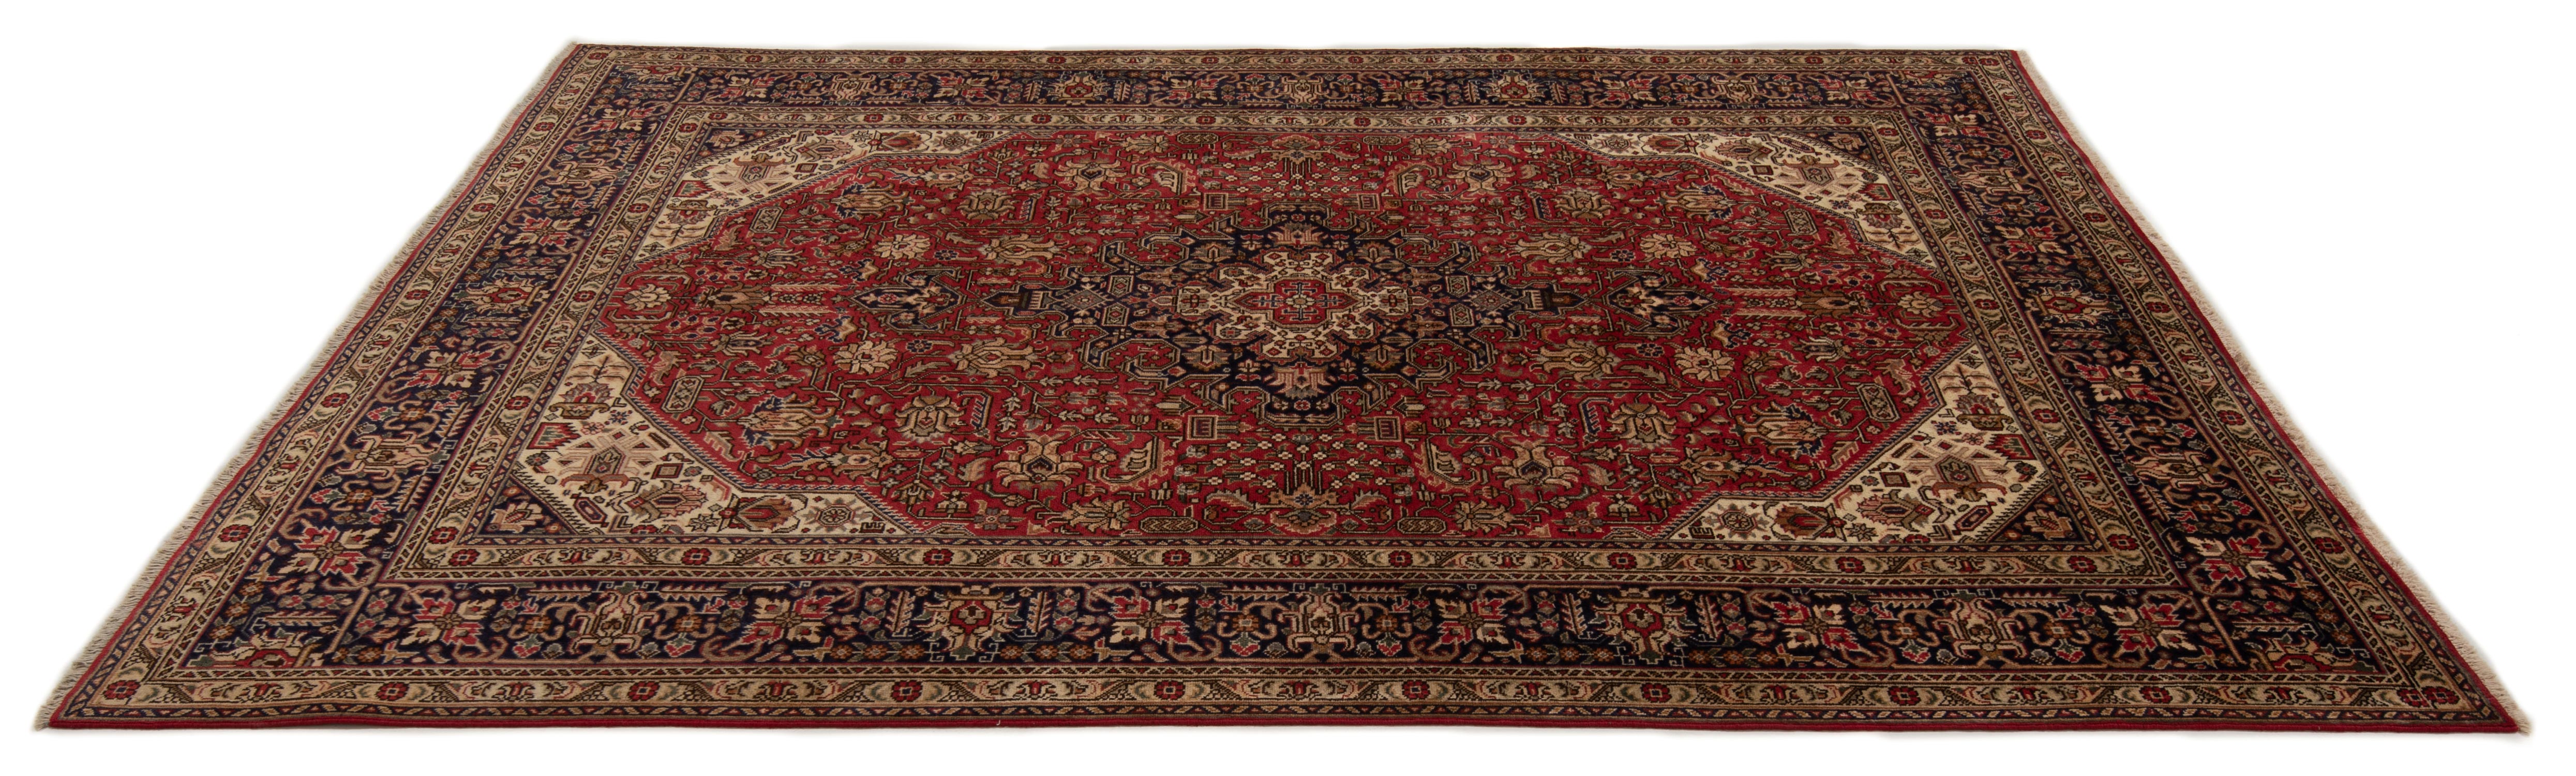 Non solo Tabriz: alla scoperta dei tappeti persiani – Artorient Milano